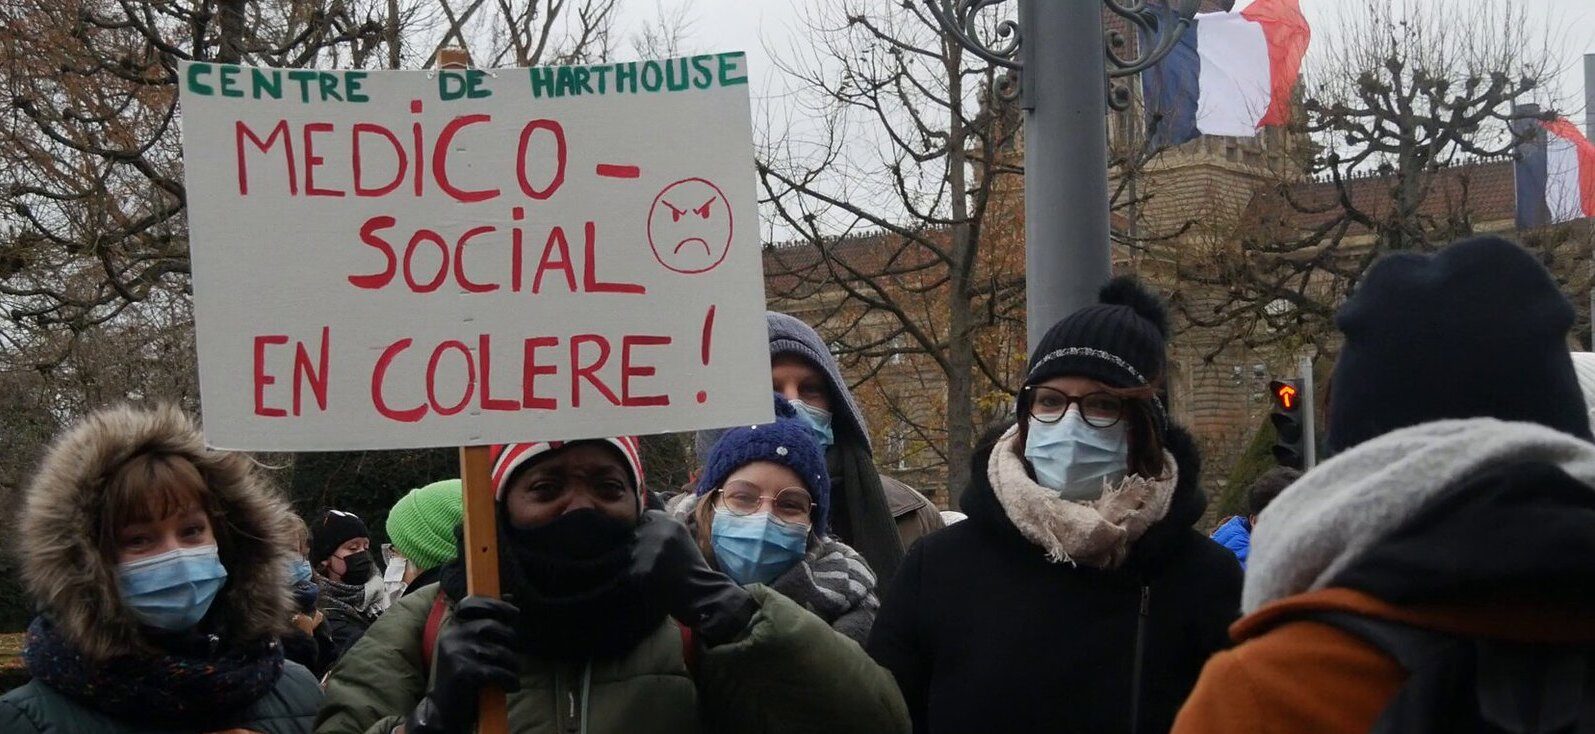 Les travailleurs sociaux en grève mardi, manifestation à Strasbourg